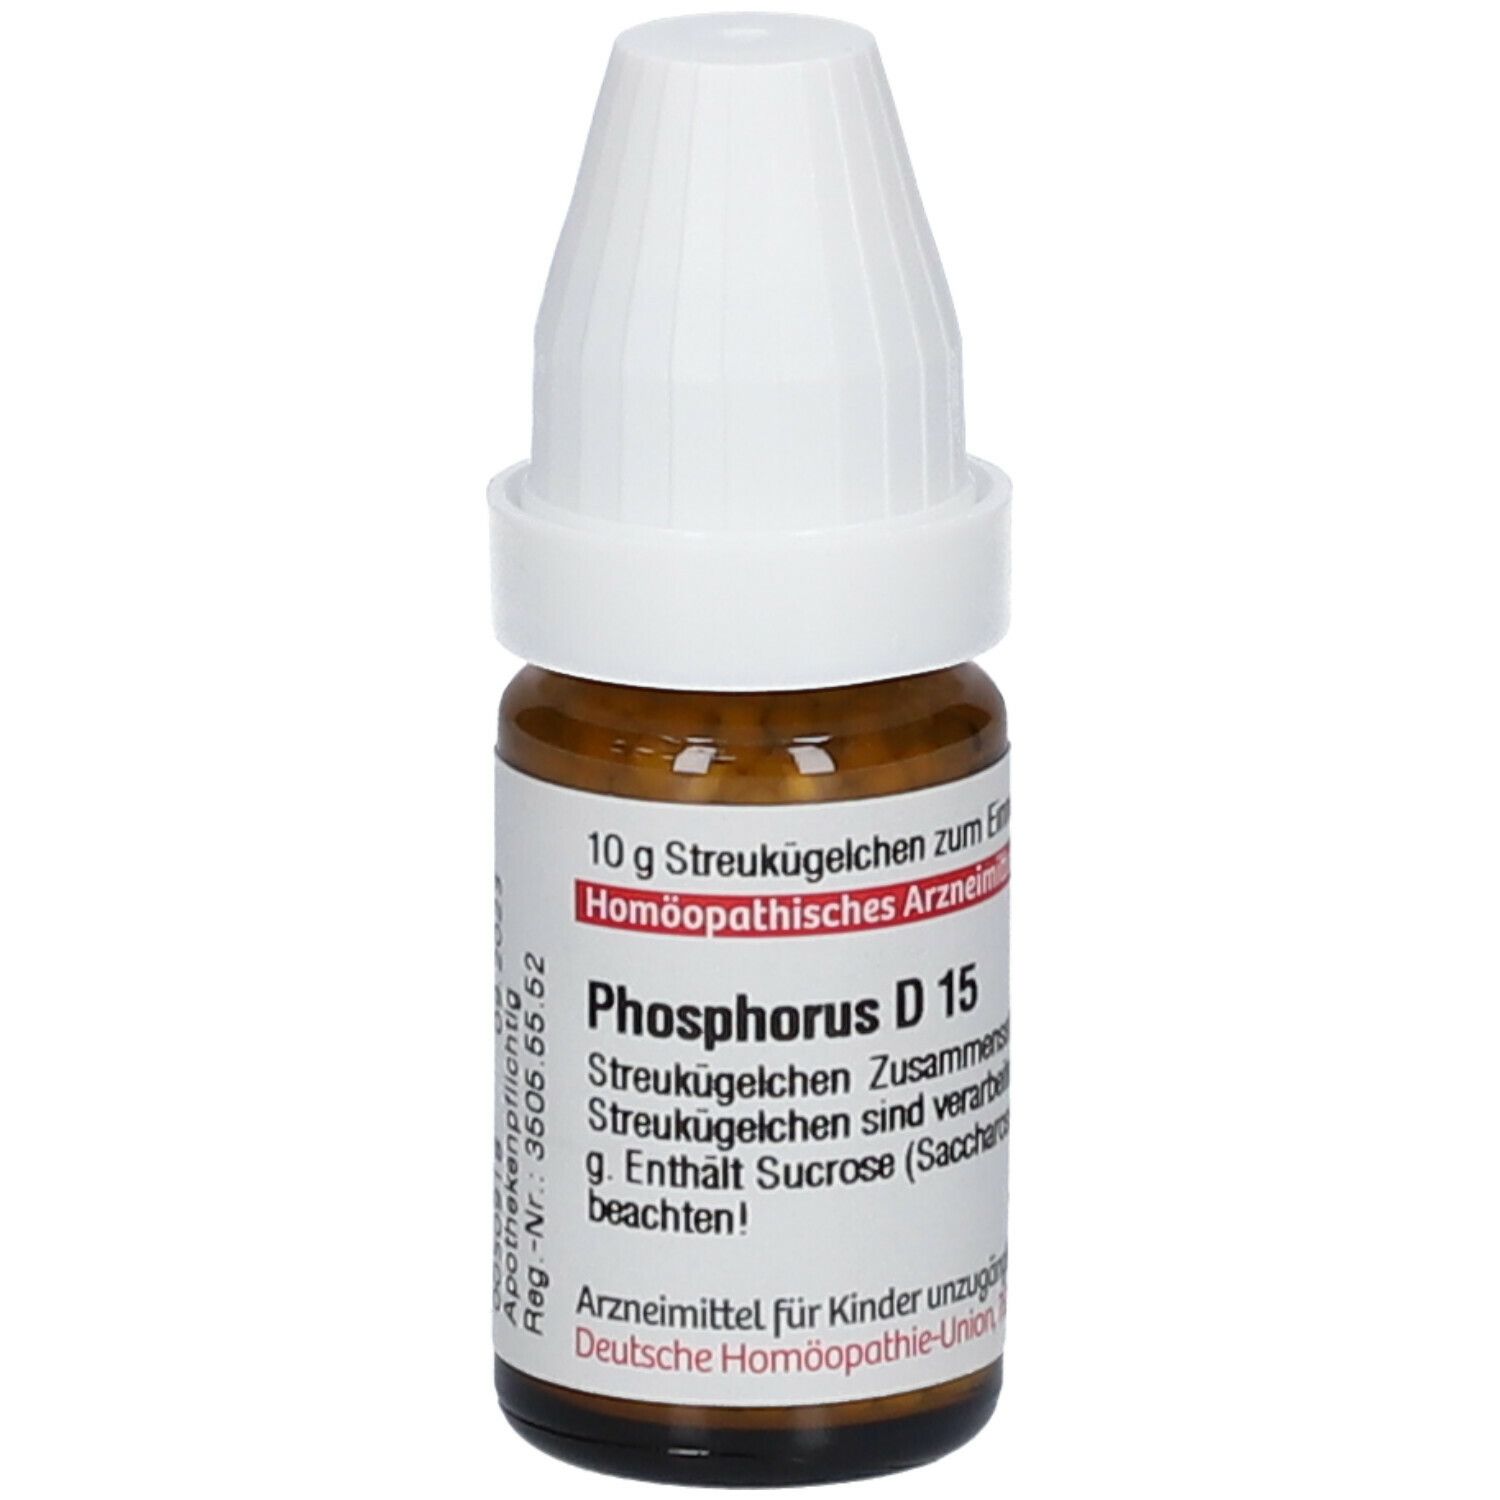 DHU Phosphorus D15